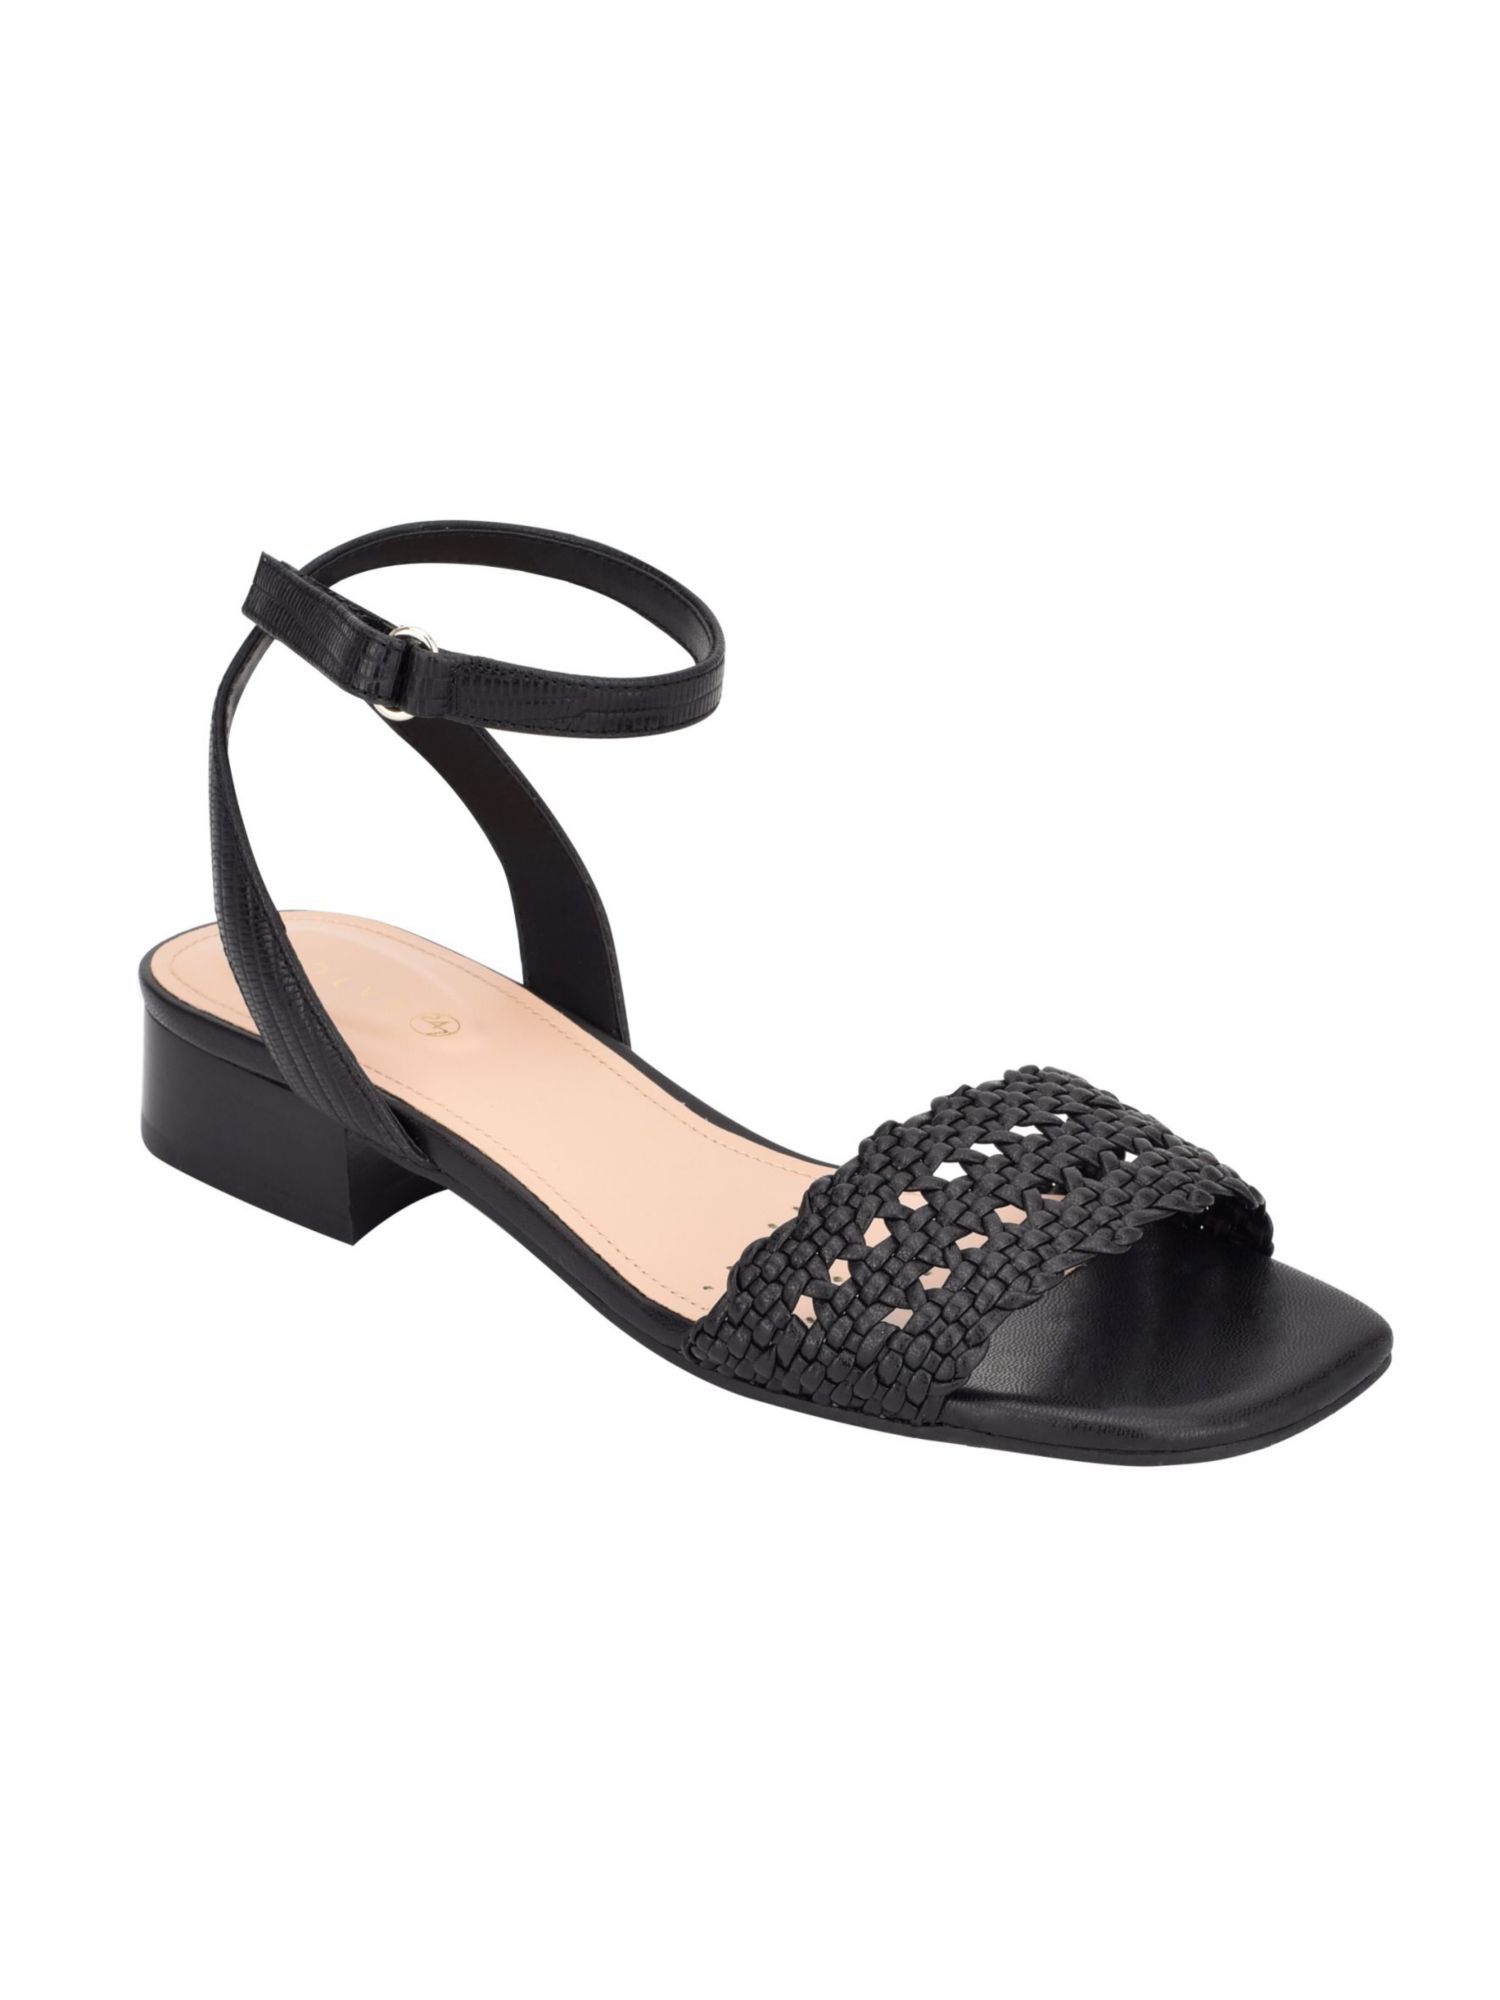 EVOLVE Womens Black Adjustable Strap Comfort Ingrid2 Open Toe Sandals Shoes 5.5